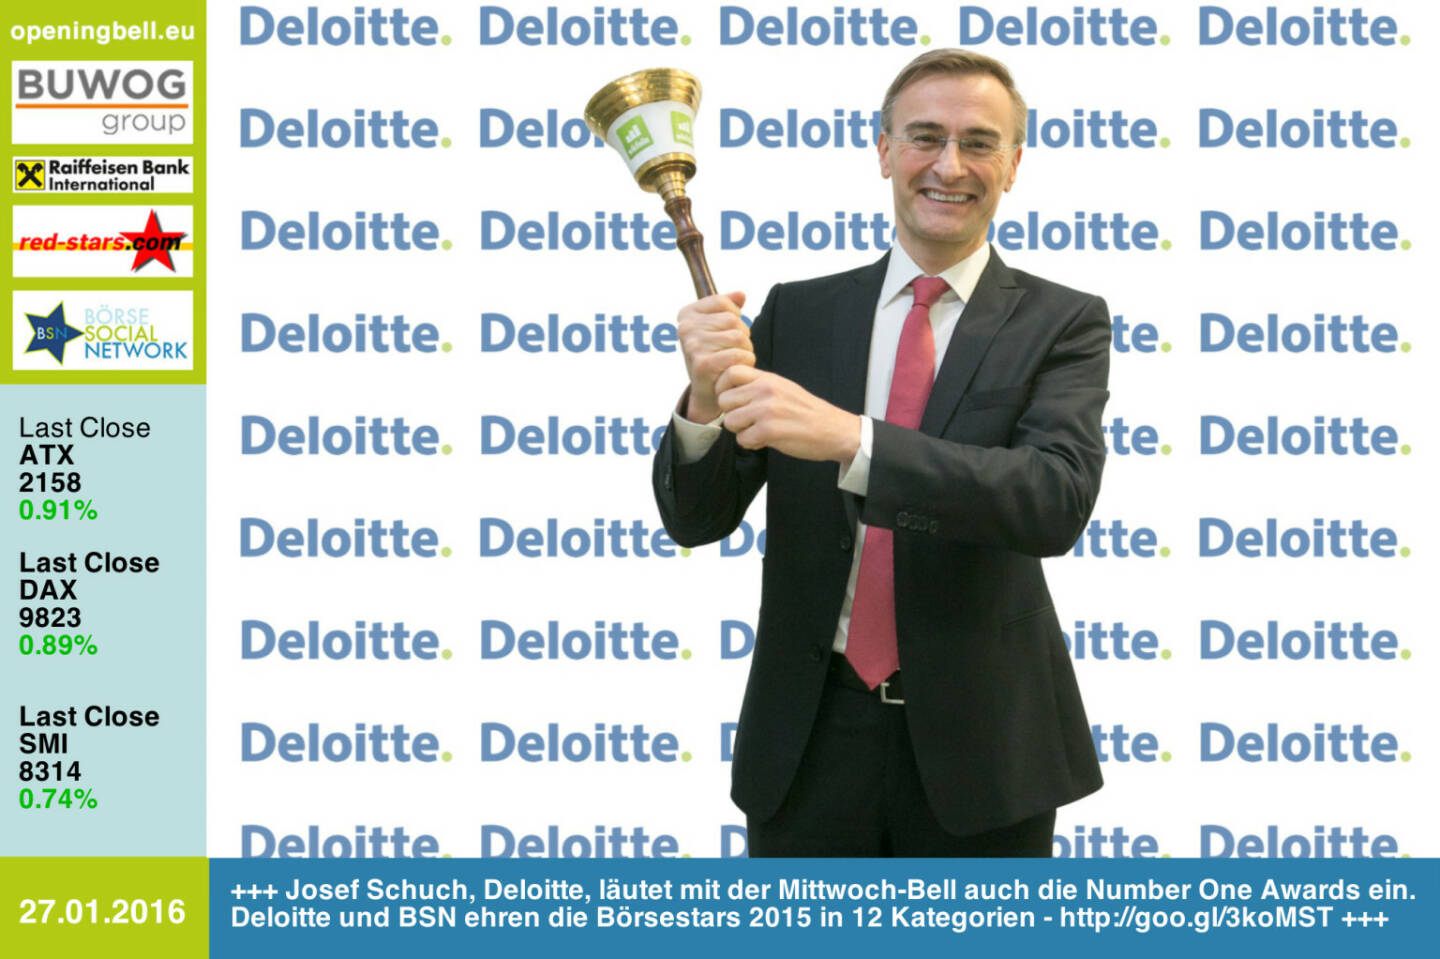 #openingbell am 27.1: Josef Schuch, Deloitte, läutet mit der Mittwoch-Bell auch die Number One Awards ein. Deloitte und BSN ehren die Börsestars 2015 in 12 Kategorien - http://goo.gl/3koMST http://www.deloitte.at http://www.openingbell.eu